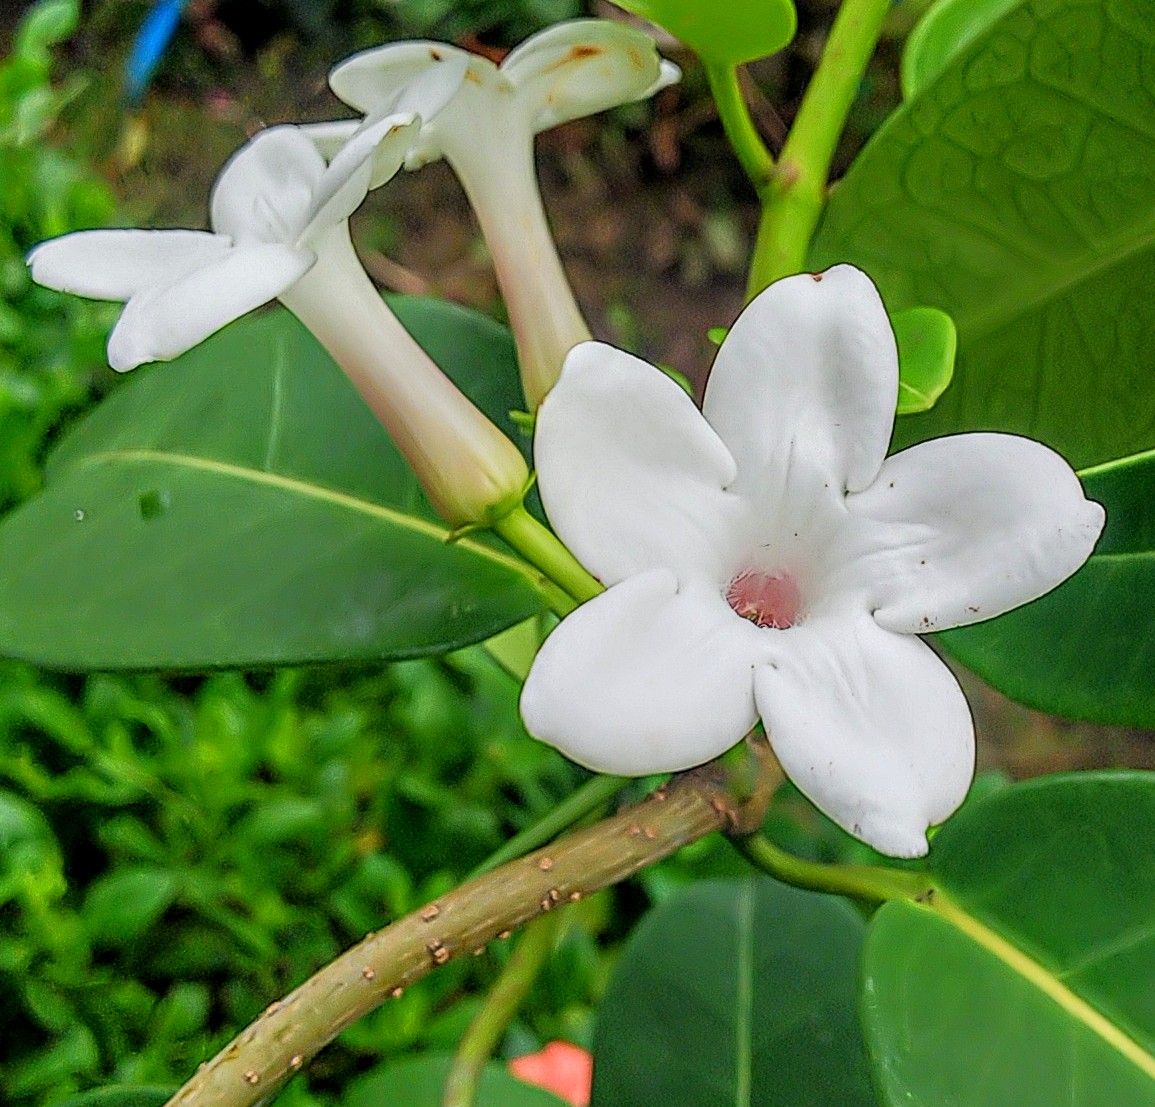 マダガスカルジャスミンの白い花🥀 10月下旬まだ咲いています✨